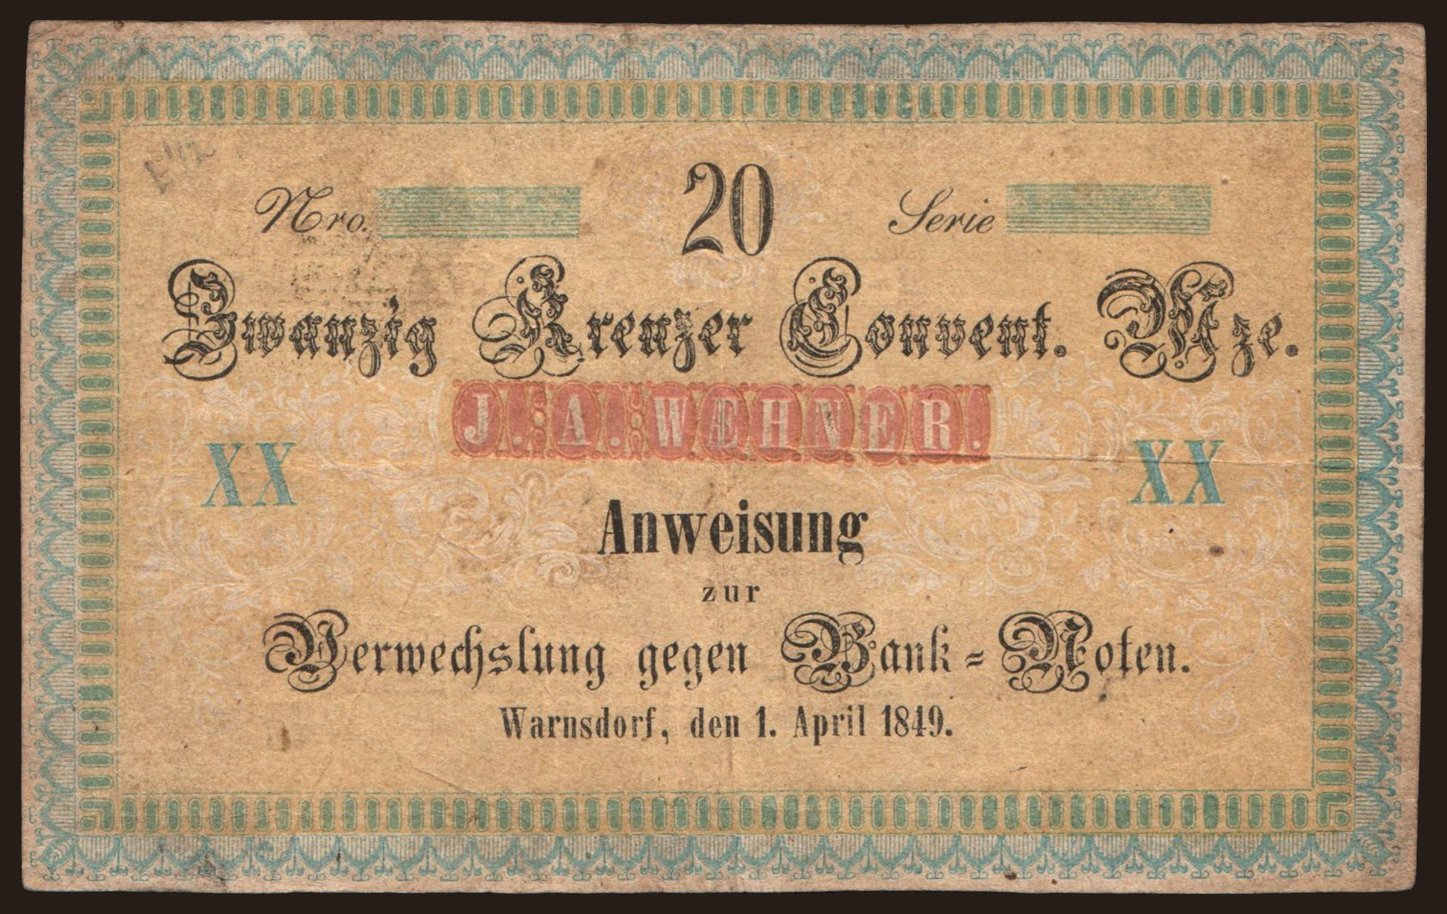 Warnsdorf/ J. A. Wehner, 20 Kreuzer, 1849